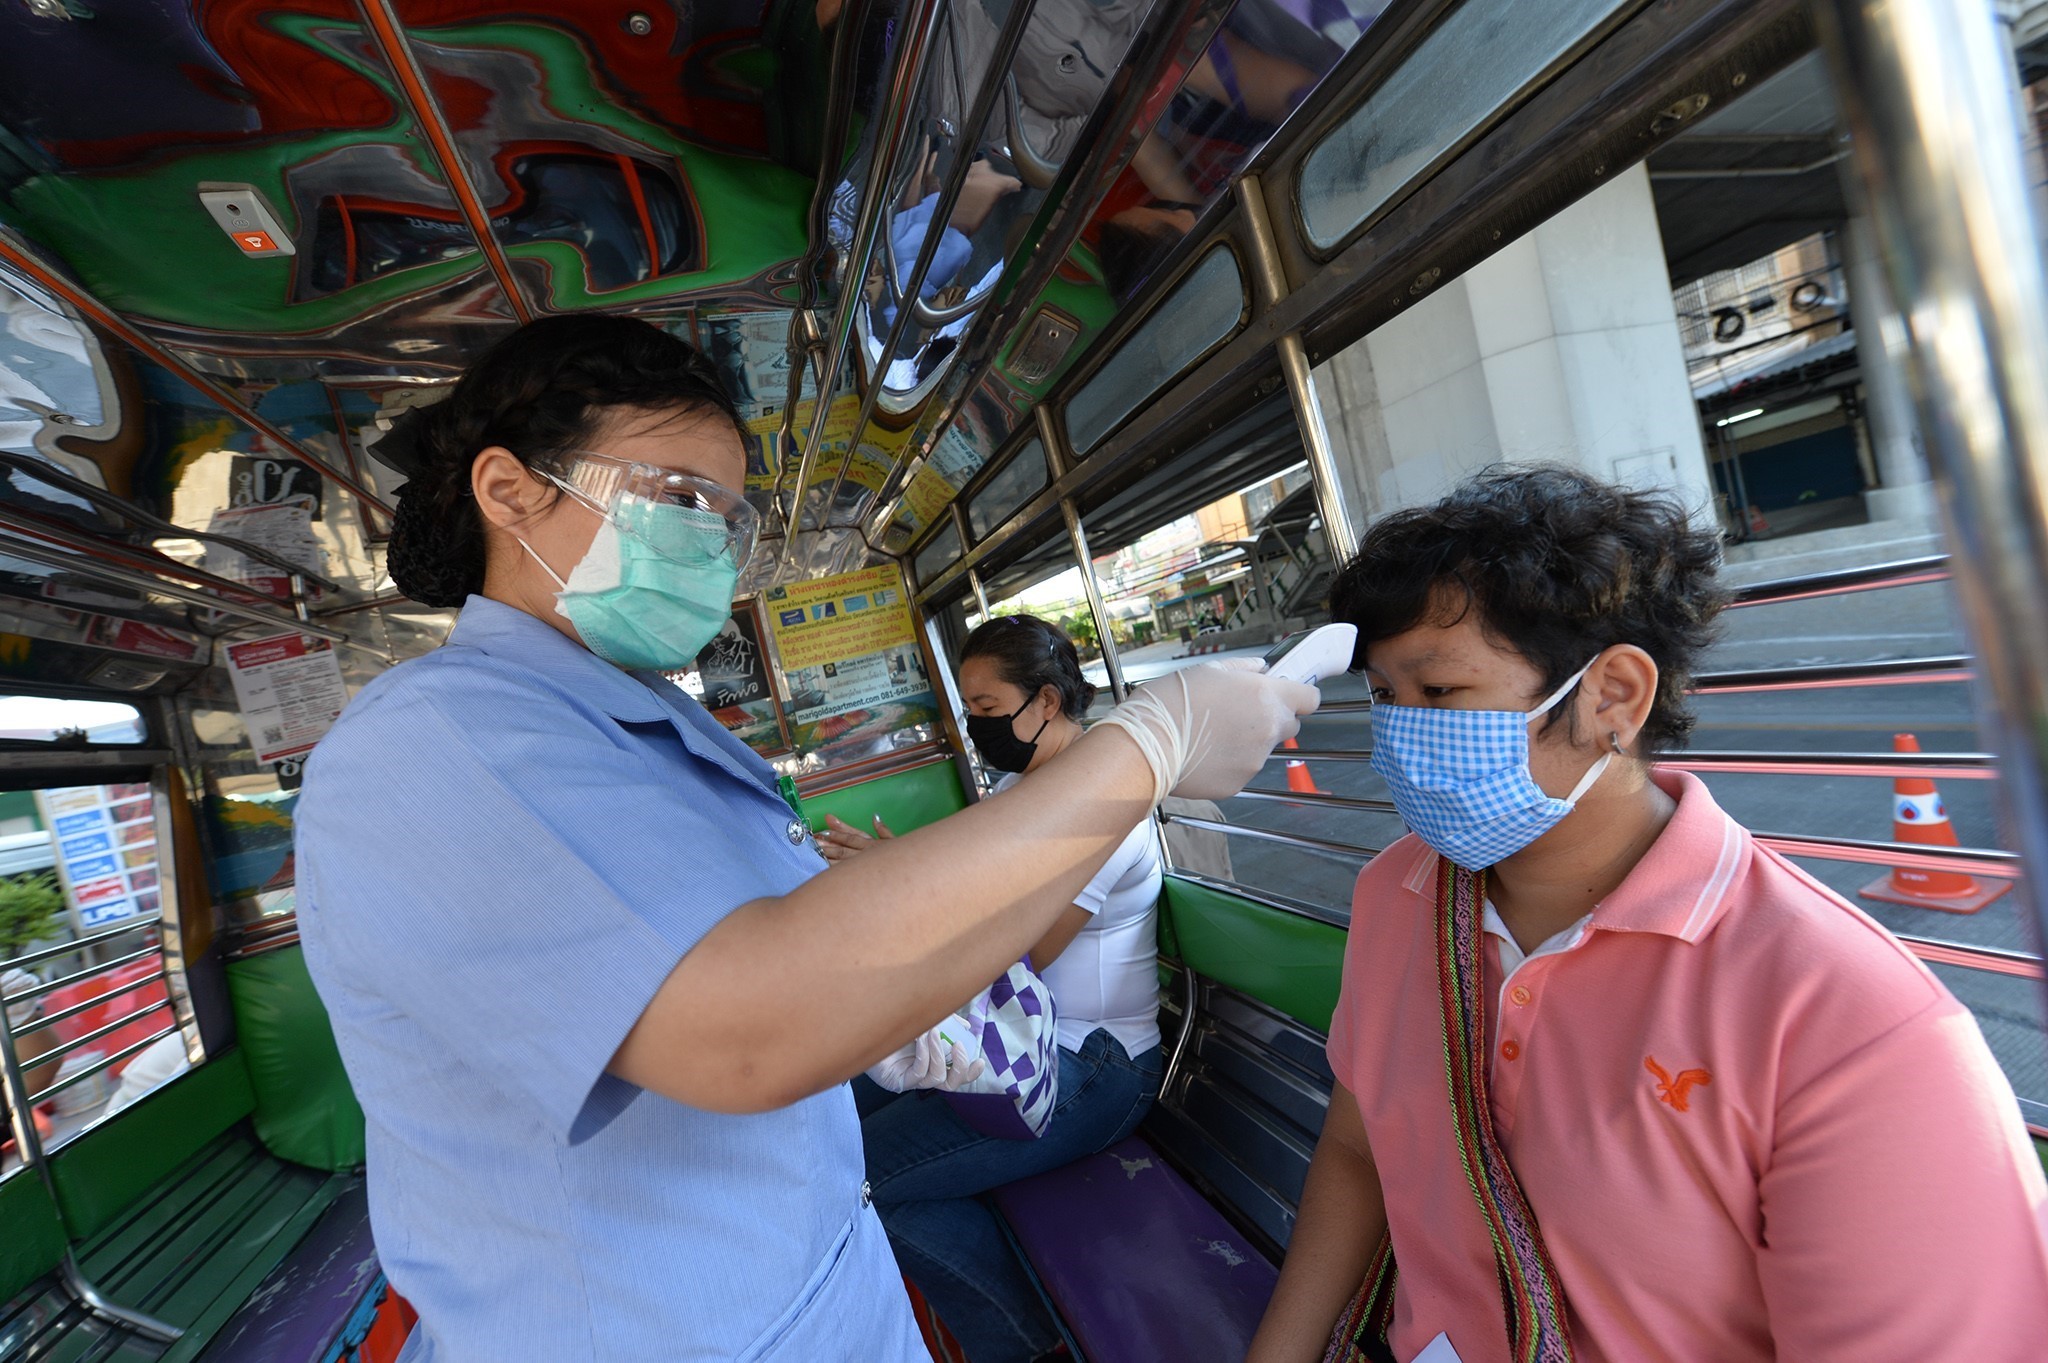 Kiểm tra thân nhiệt cho người dân tại một trạm kiểm soát ở Bangkok, Thái Lan nhằm ngăn chặn sự lây lan của dịch COVID-19, ngày 26/3/2020. (Ảnh: THX/TTXVN)